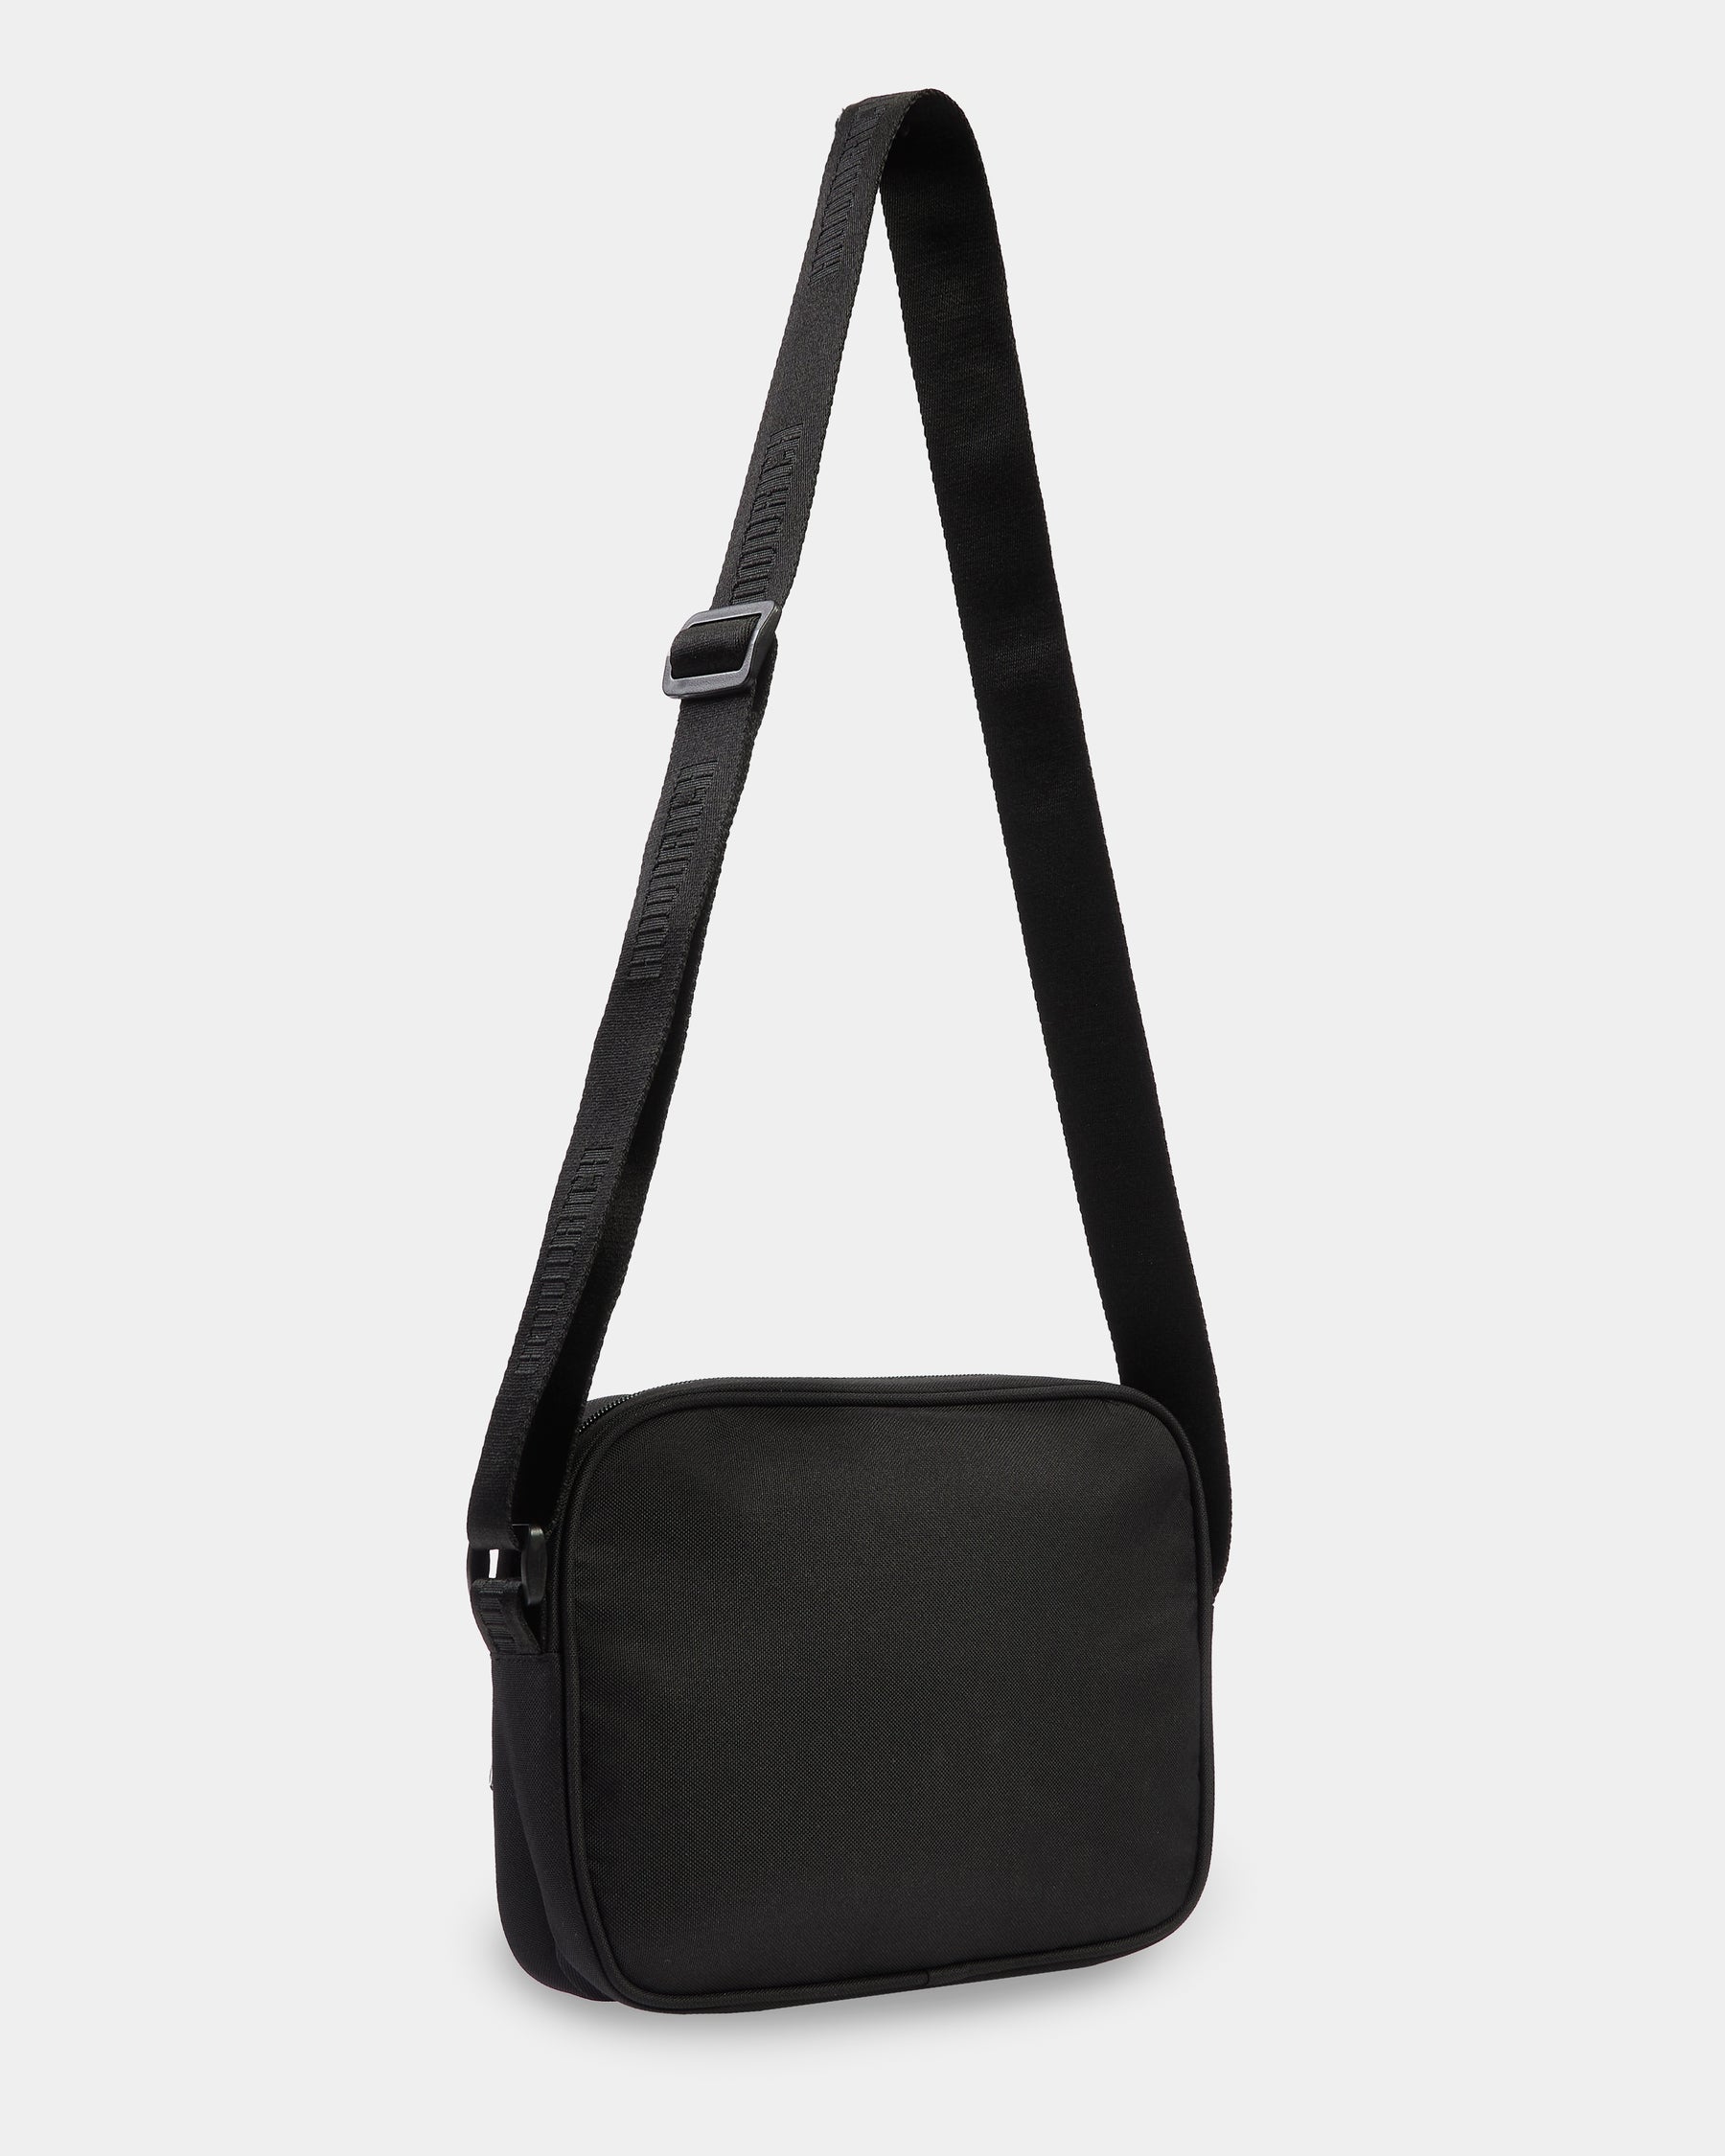 OG Avail Mini Bag - Black/White